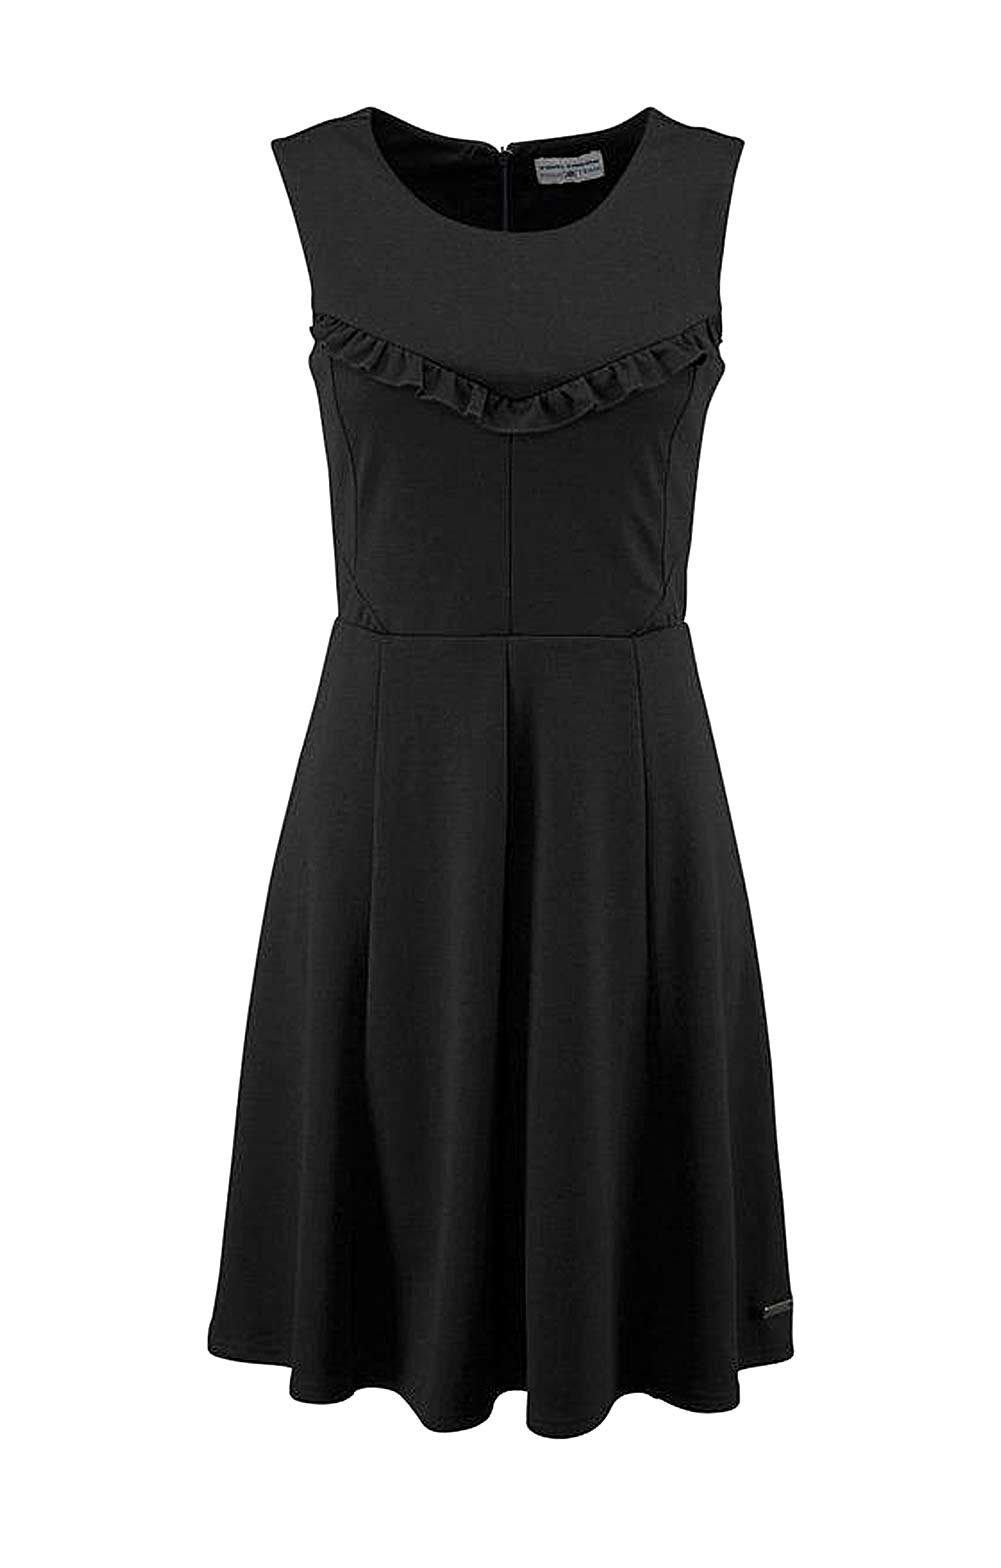 Abendkleid mit Tailor Tom Damen Rüschen, schwarz Marken-Kleid TOM TAILOR